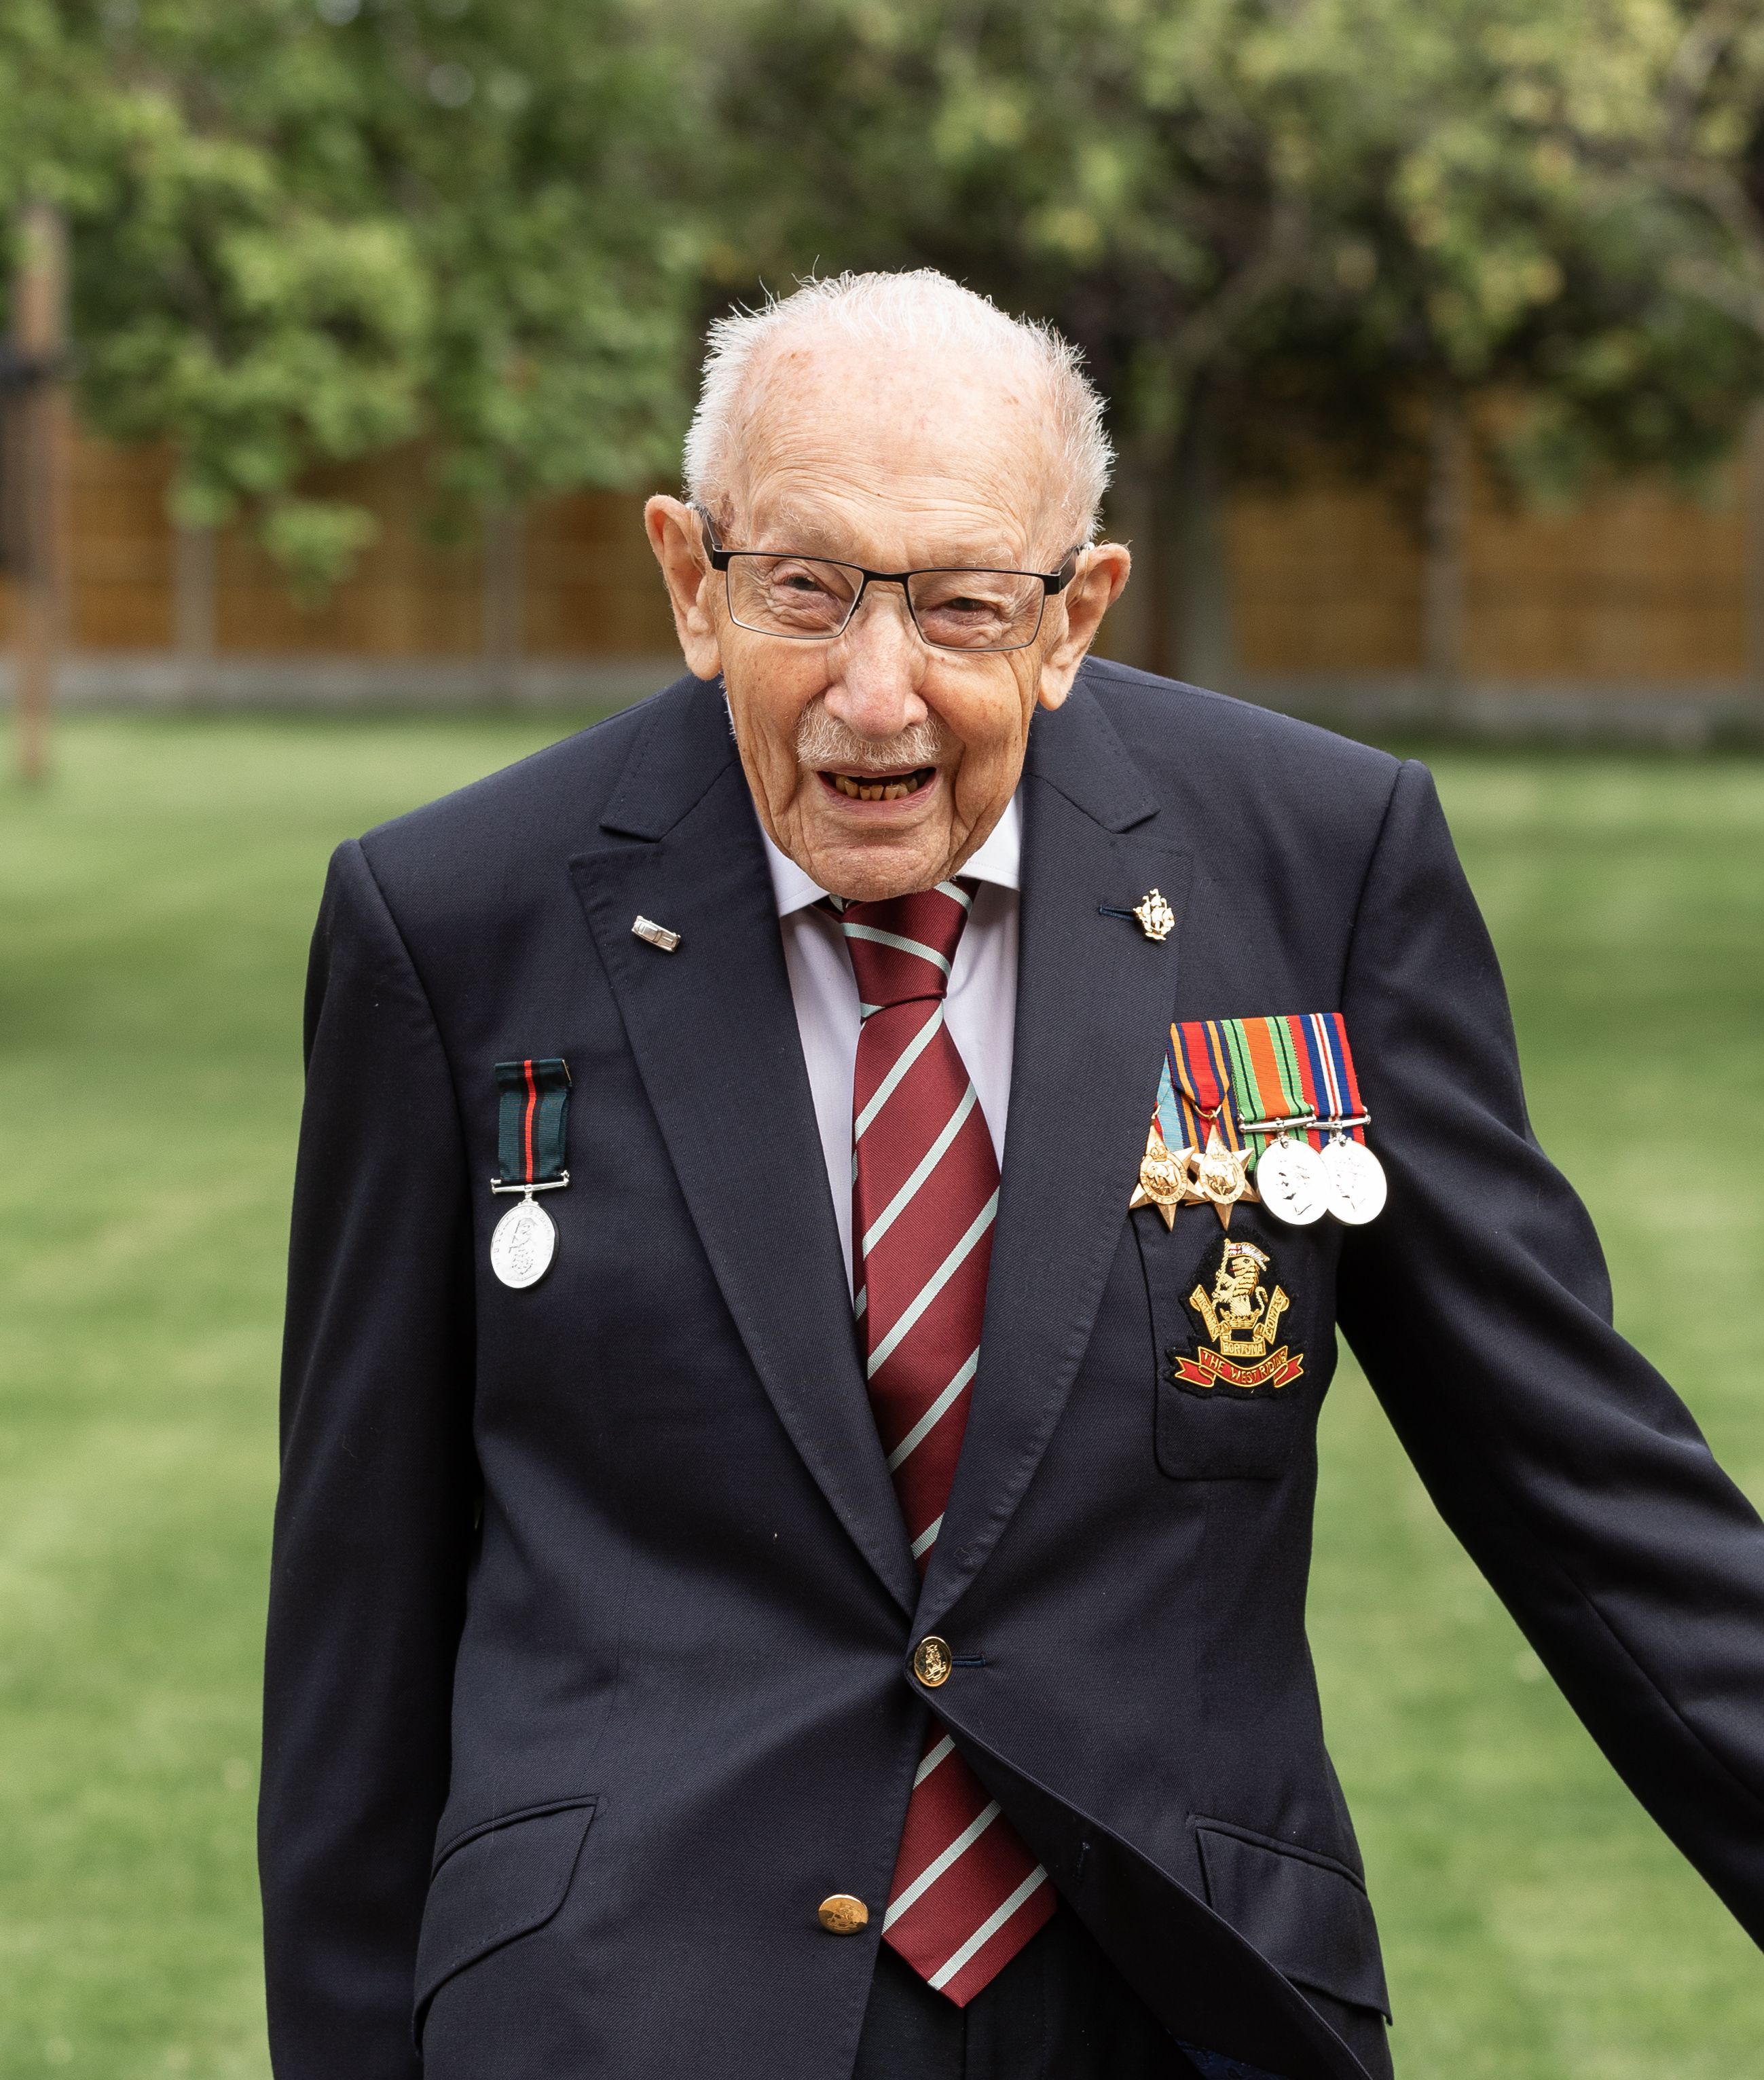 La hazaña del capitán Moore: así se ha convertido este inglés de 100 años en héroe nacional